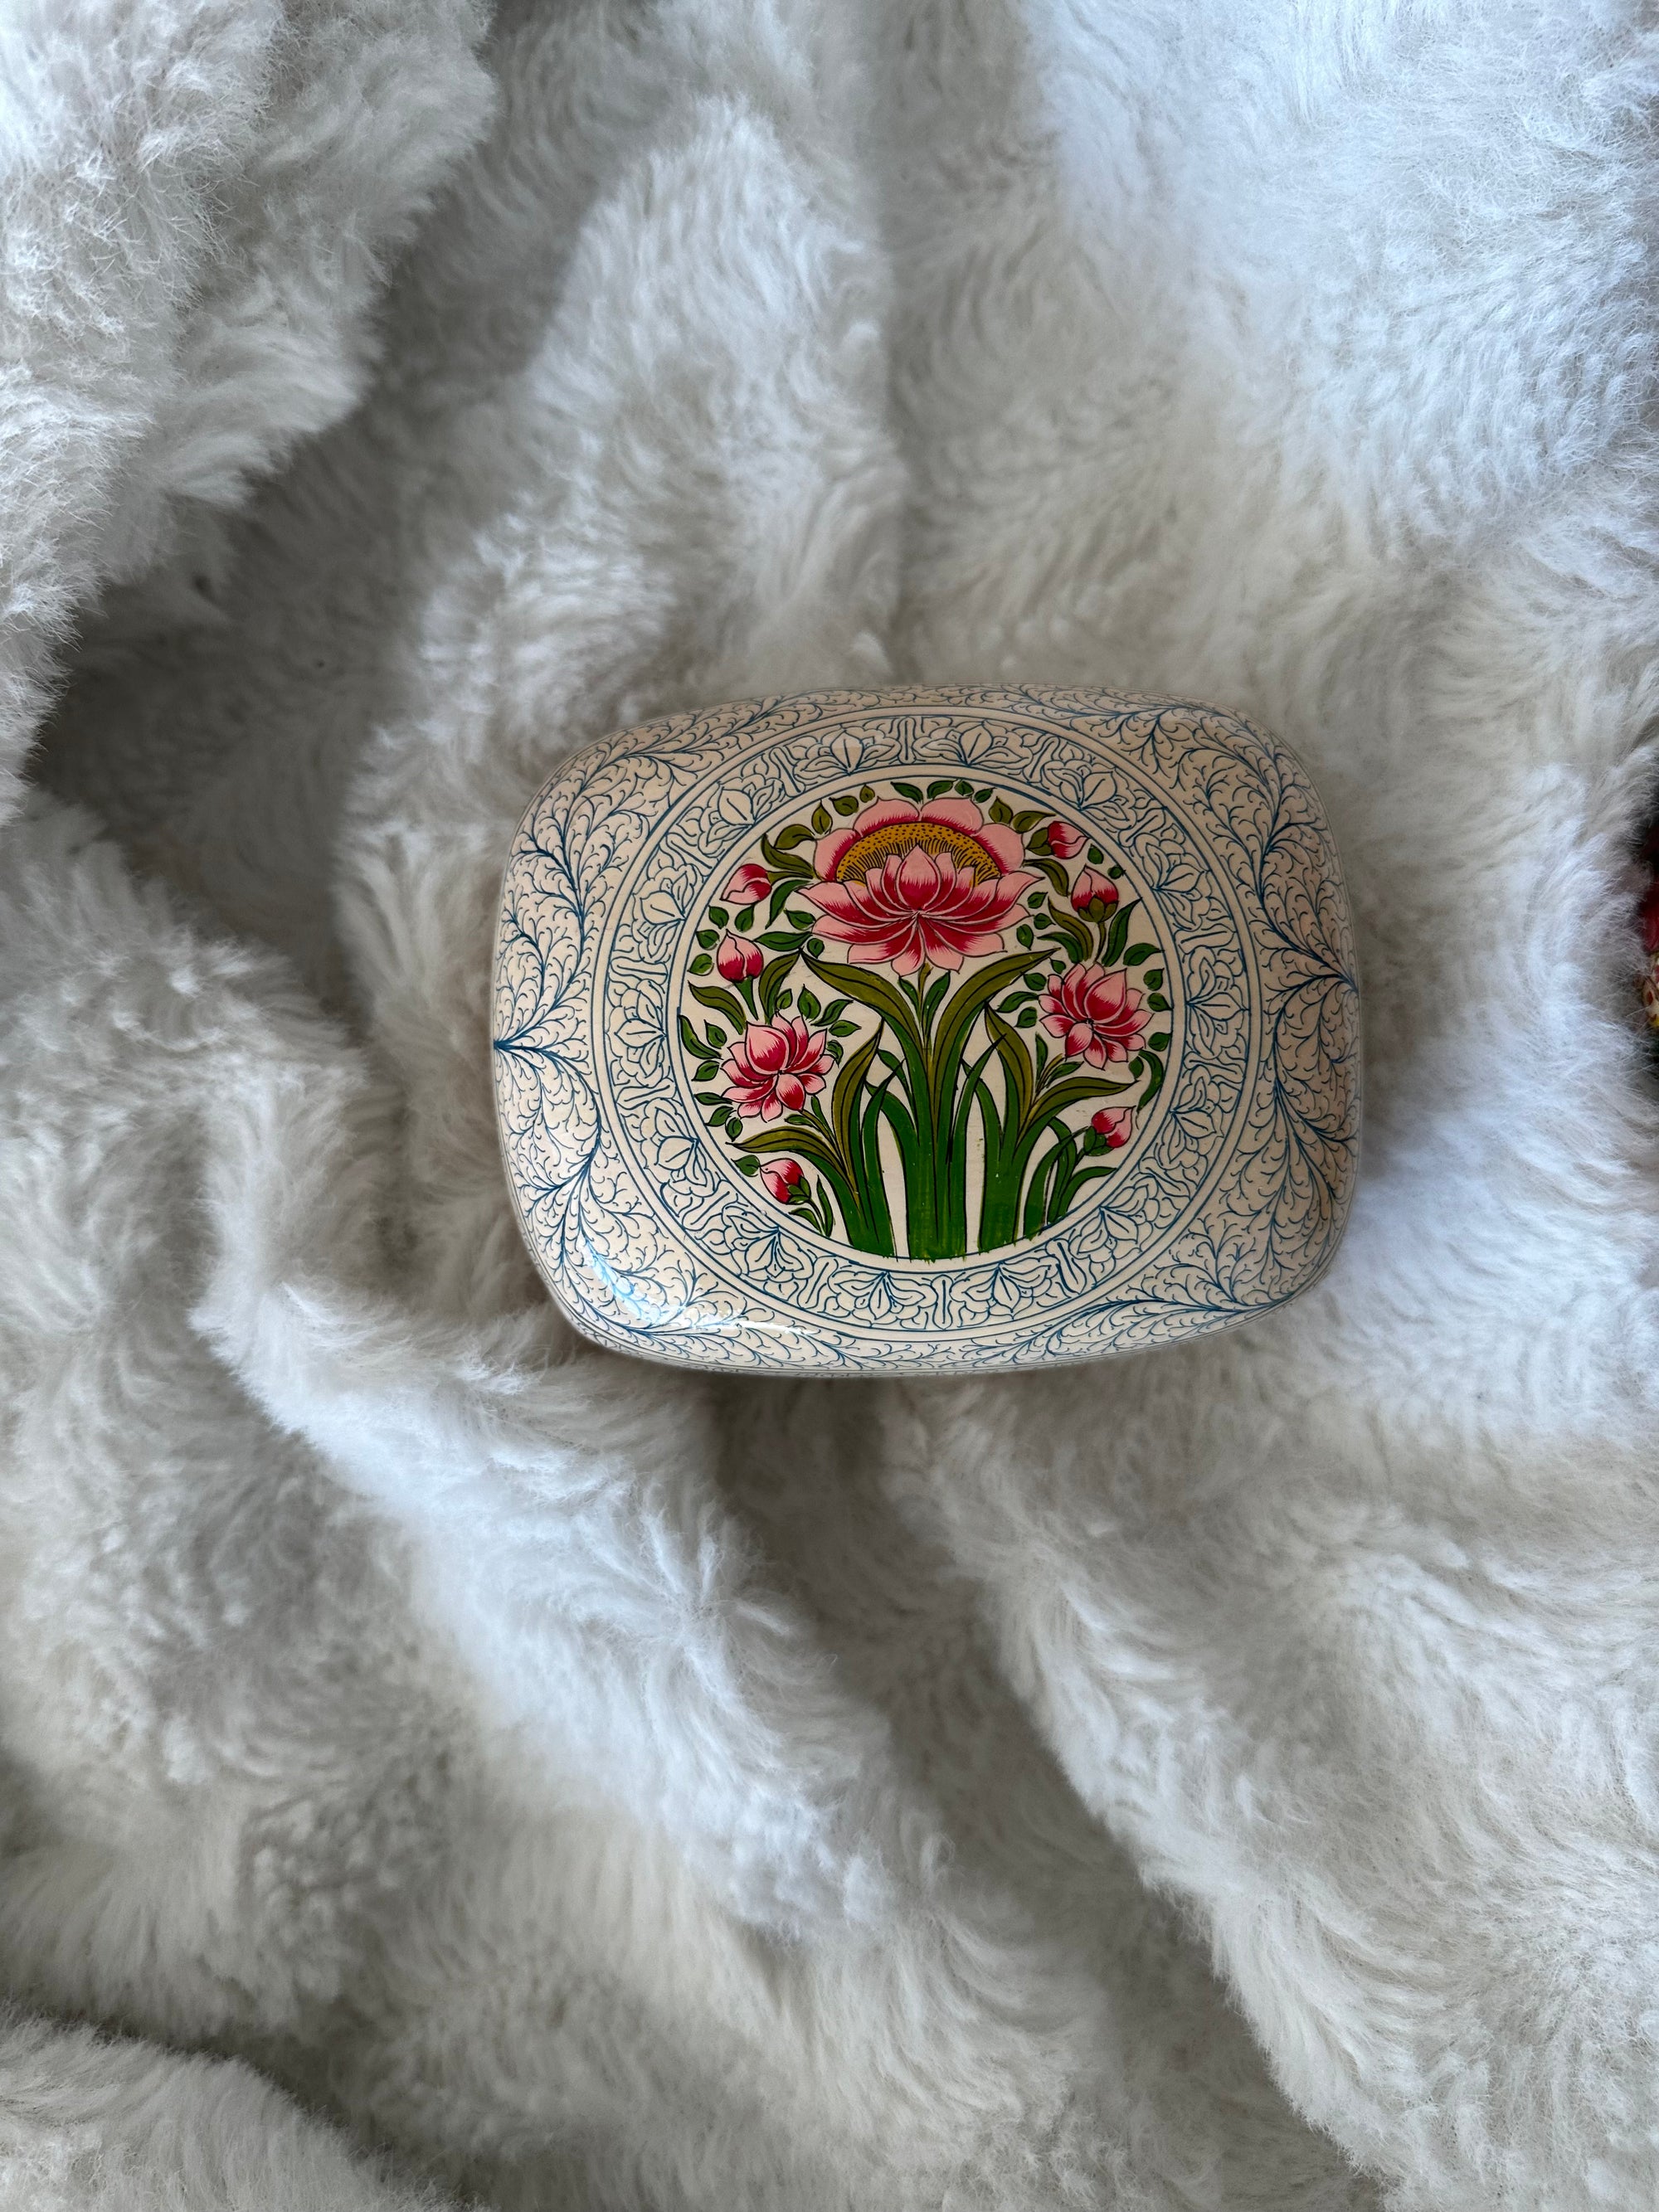 Pamposh Handpainted Midi Jewelry Box in Pearl